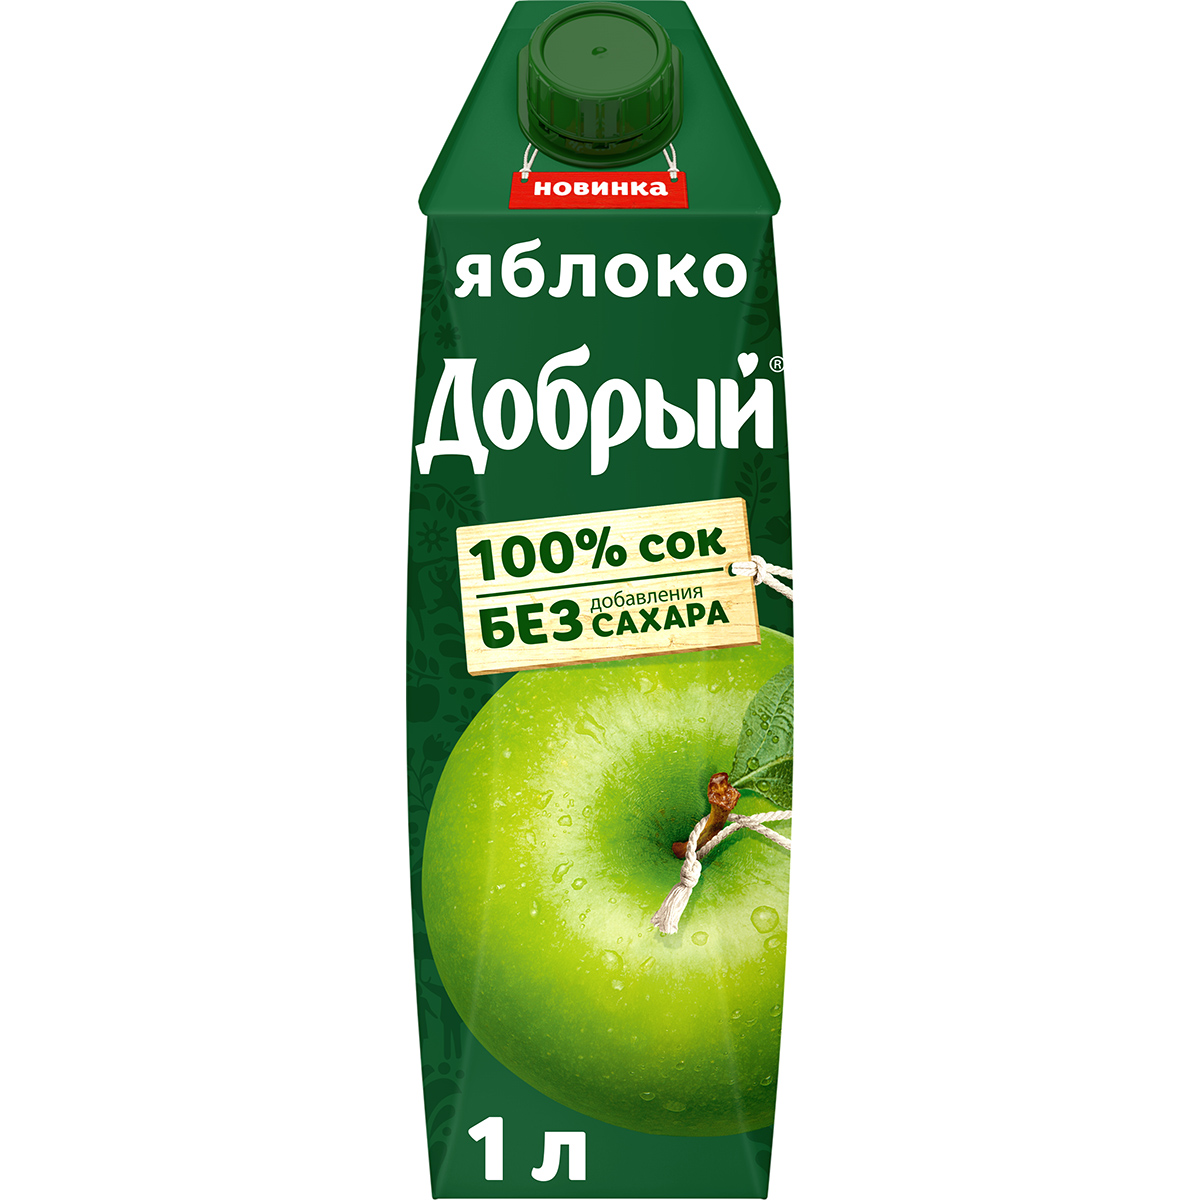 Сок Добрый яблочный осветленный 100% 1 л